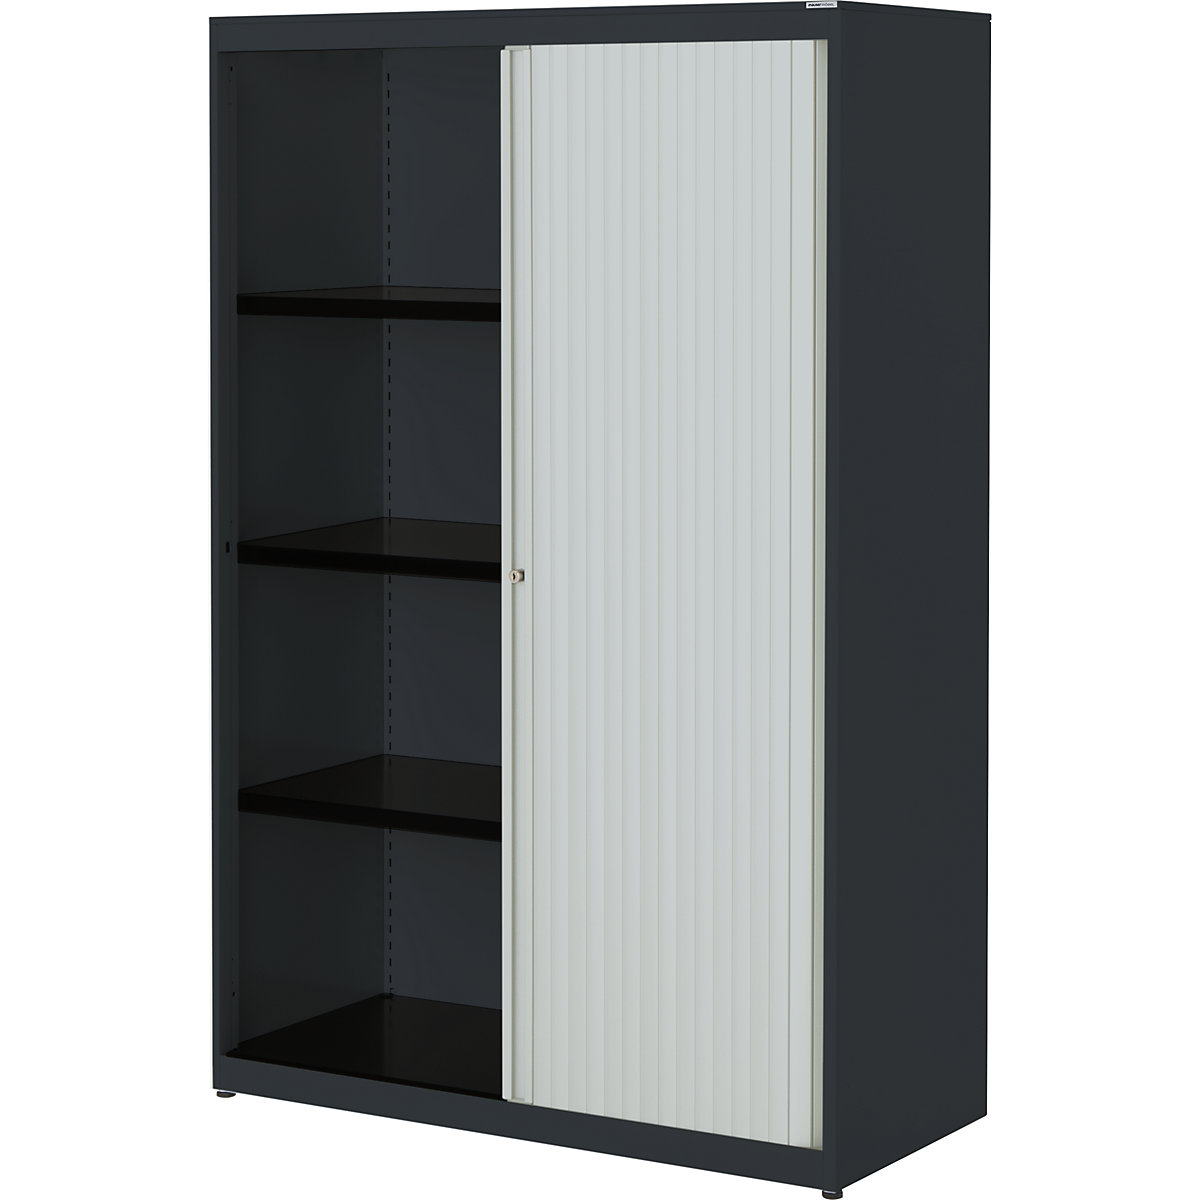 Horizontal roller shutter cupboard – mauser, HxWxD 1516 x 1000 x 432 mm, steel plate, 3 shelves, charcoal / light grey / charcoal-4